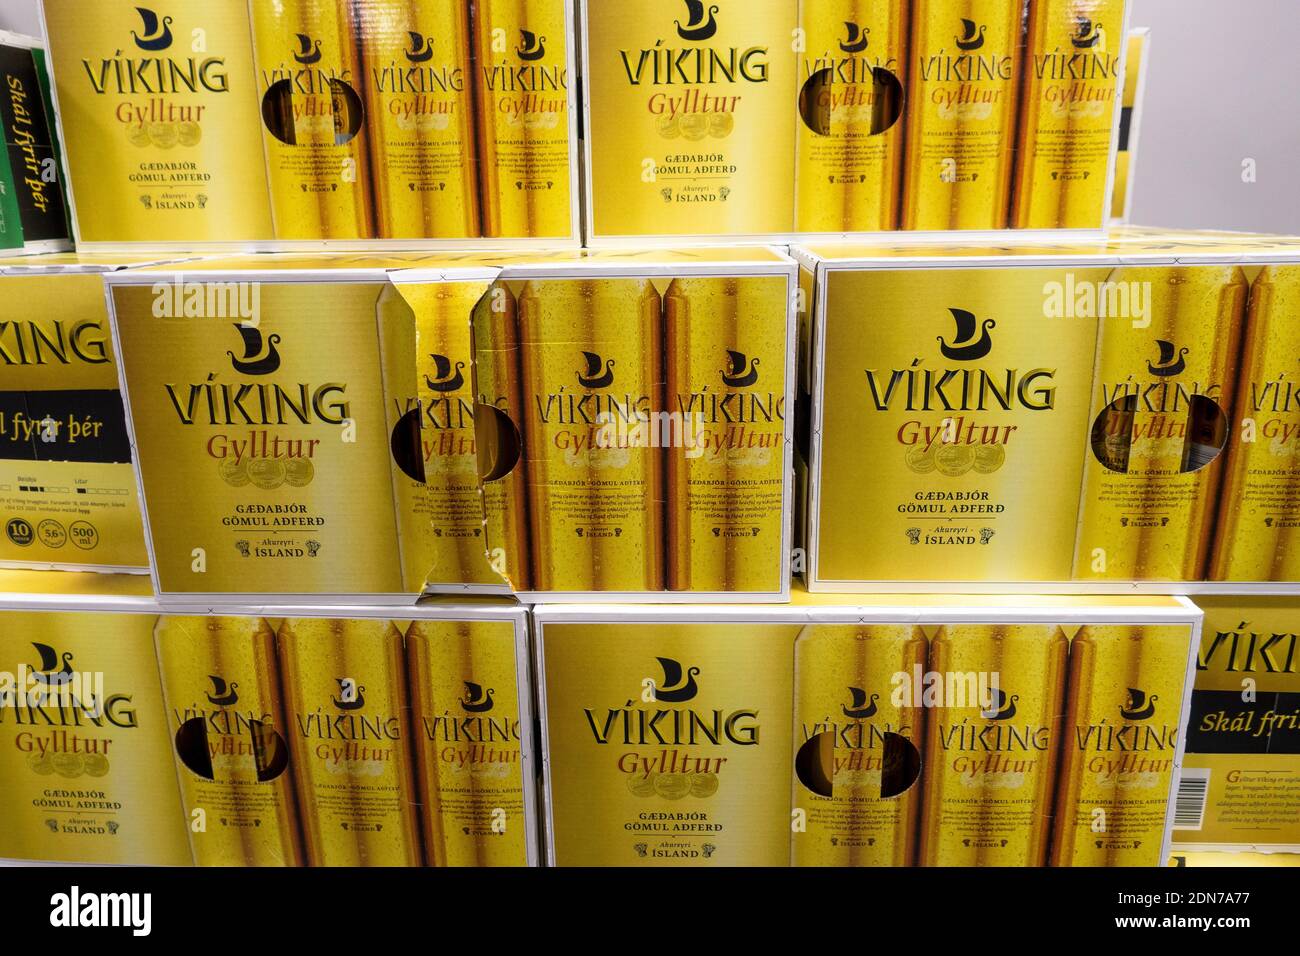 Viking beer immagini e fotografie stock ad alta risoluzione - Alamy